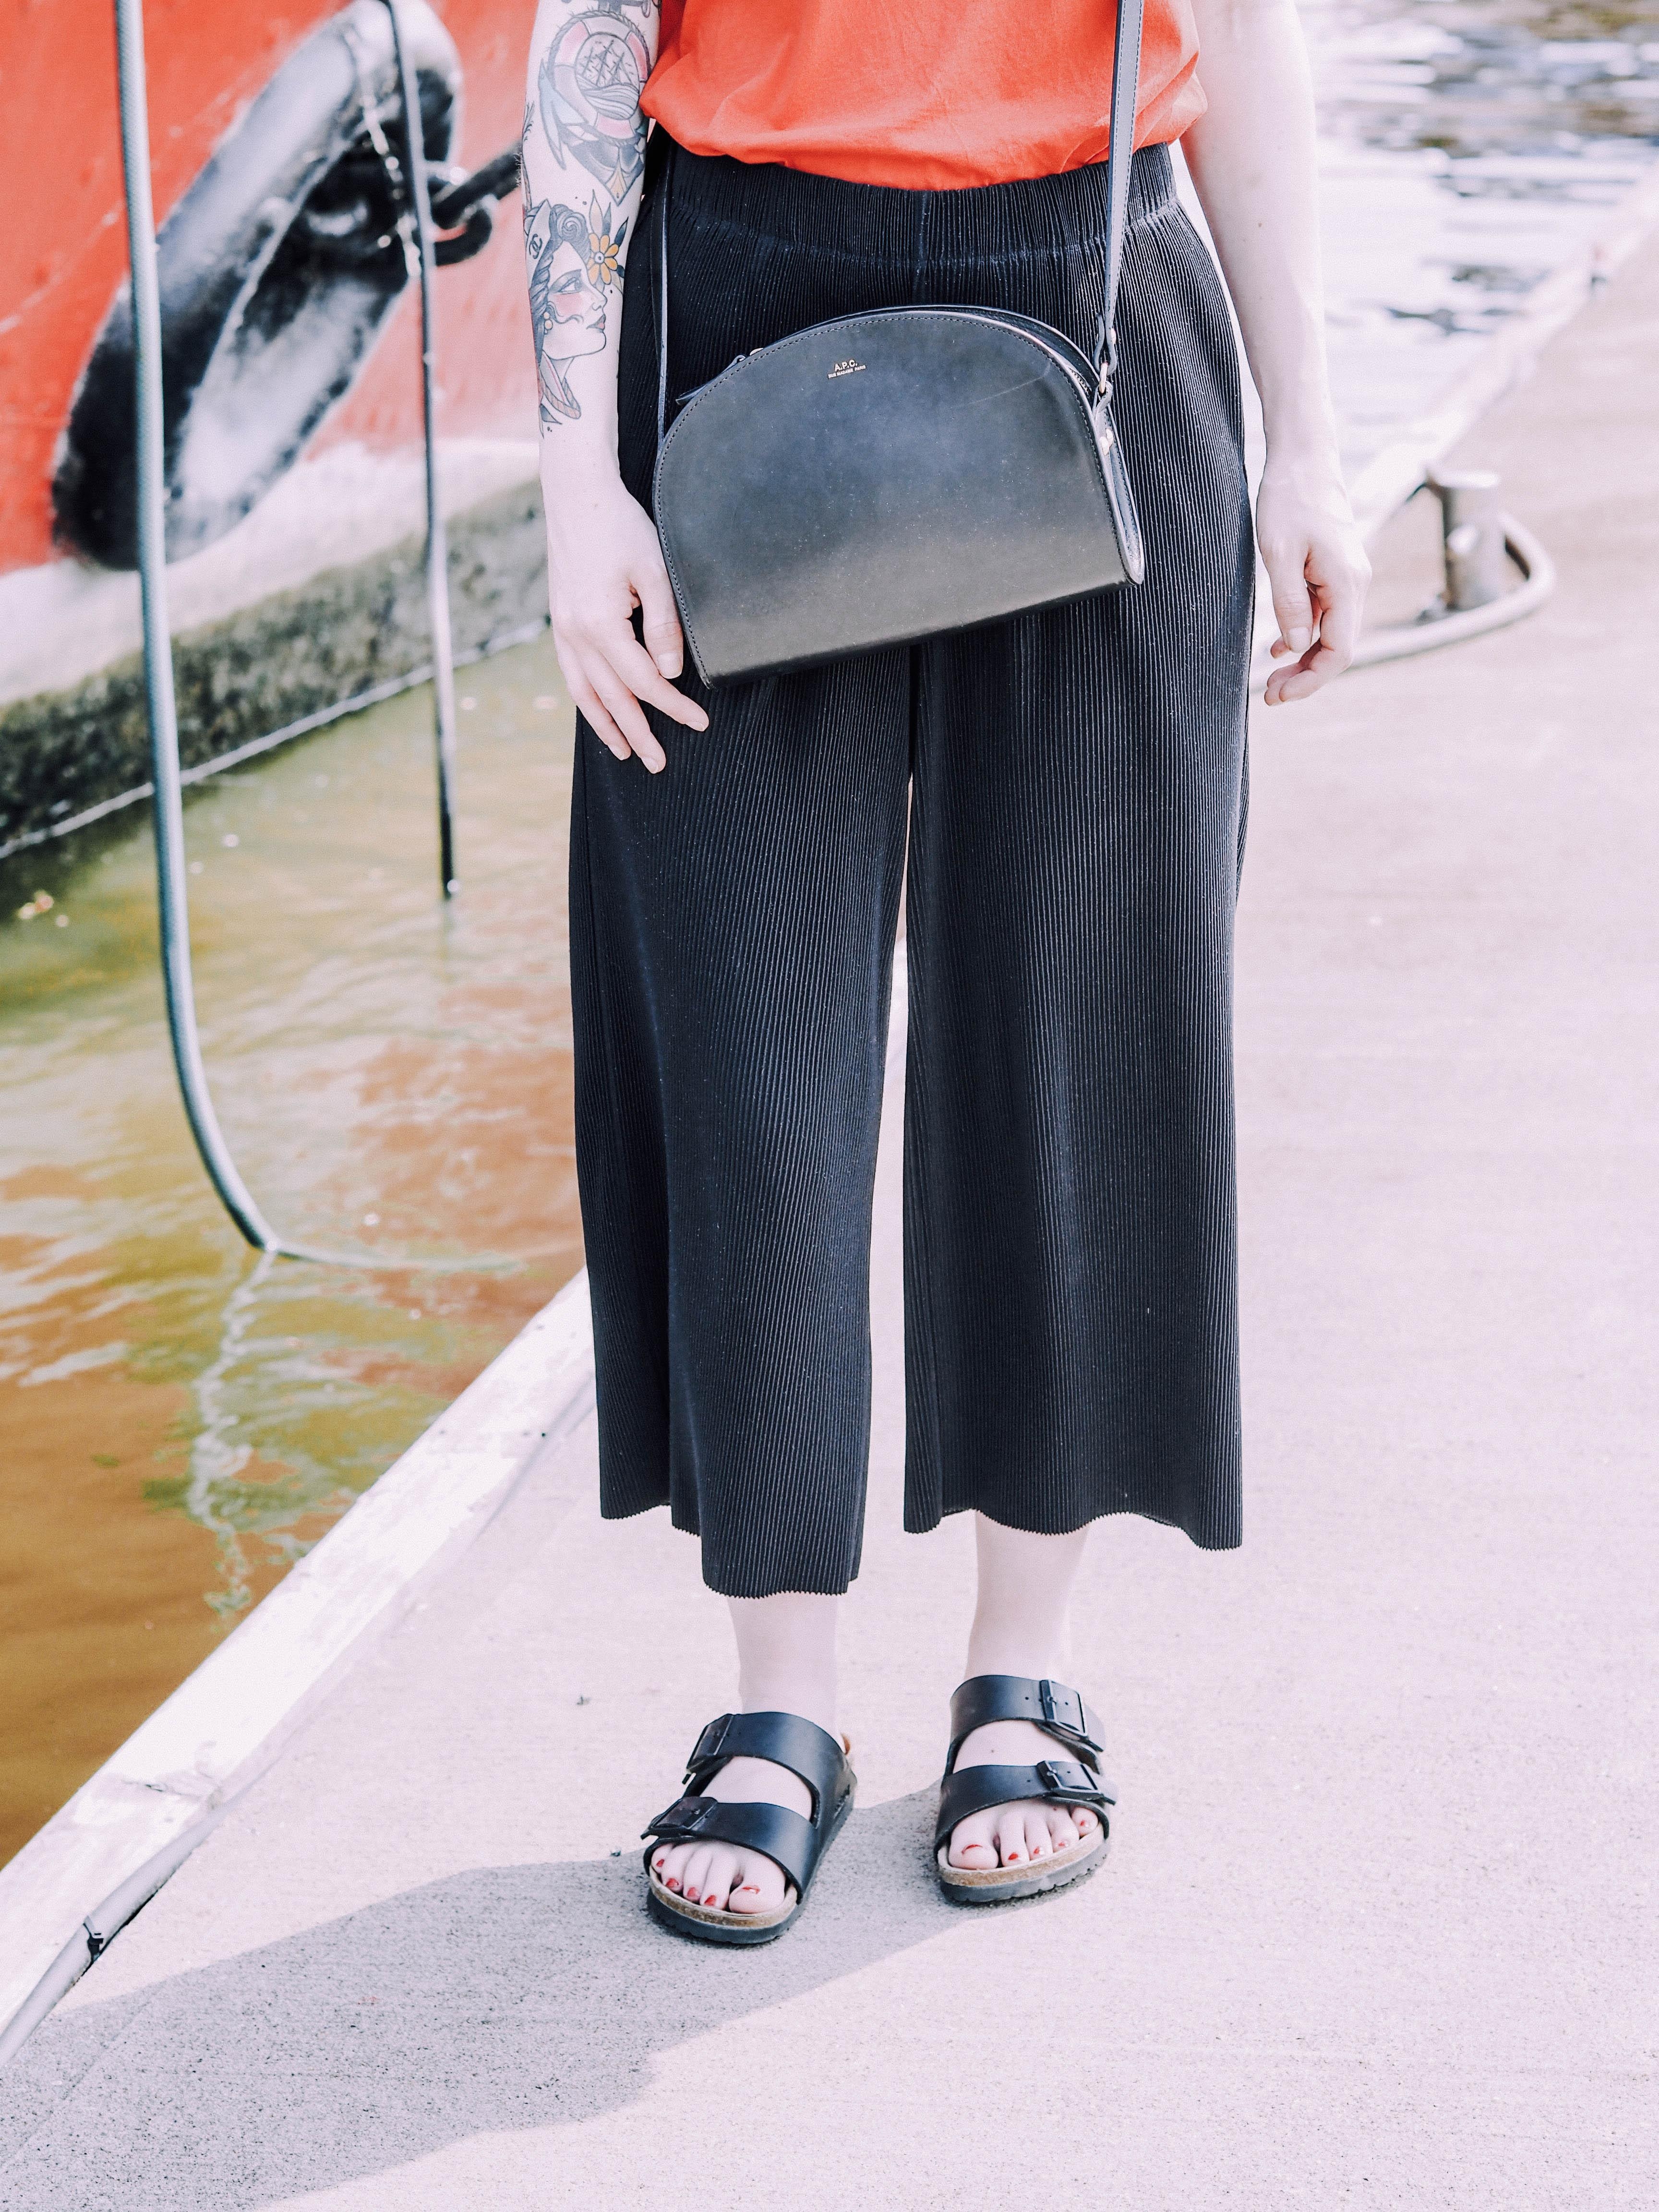 Lieblingskombi für den Sommer: #Culotte und #Birkenstock! 
#sandalen #fashionlieblinge #outfit #handtasche 